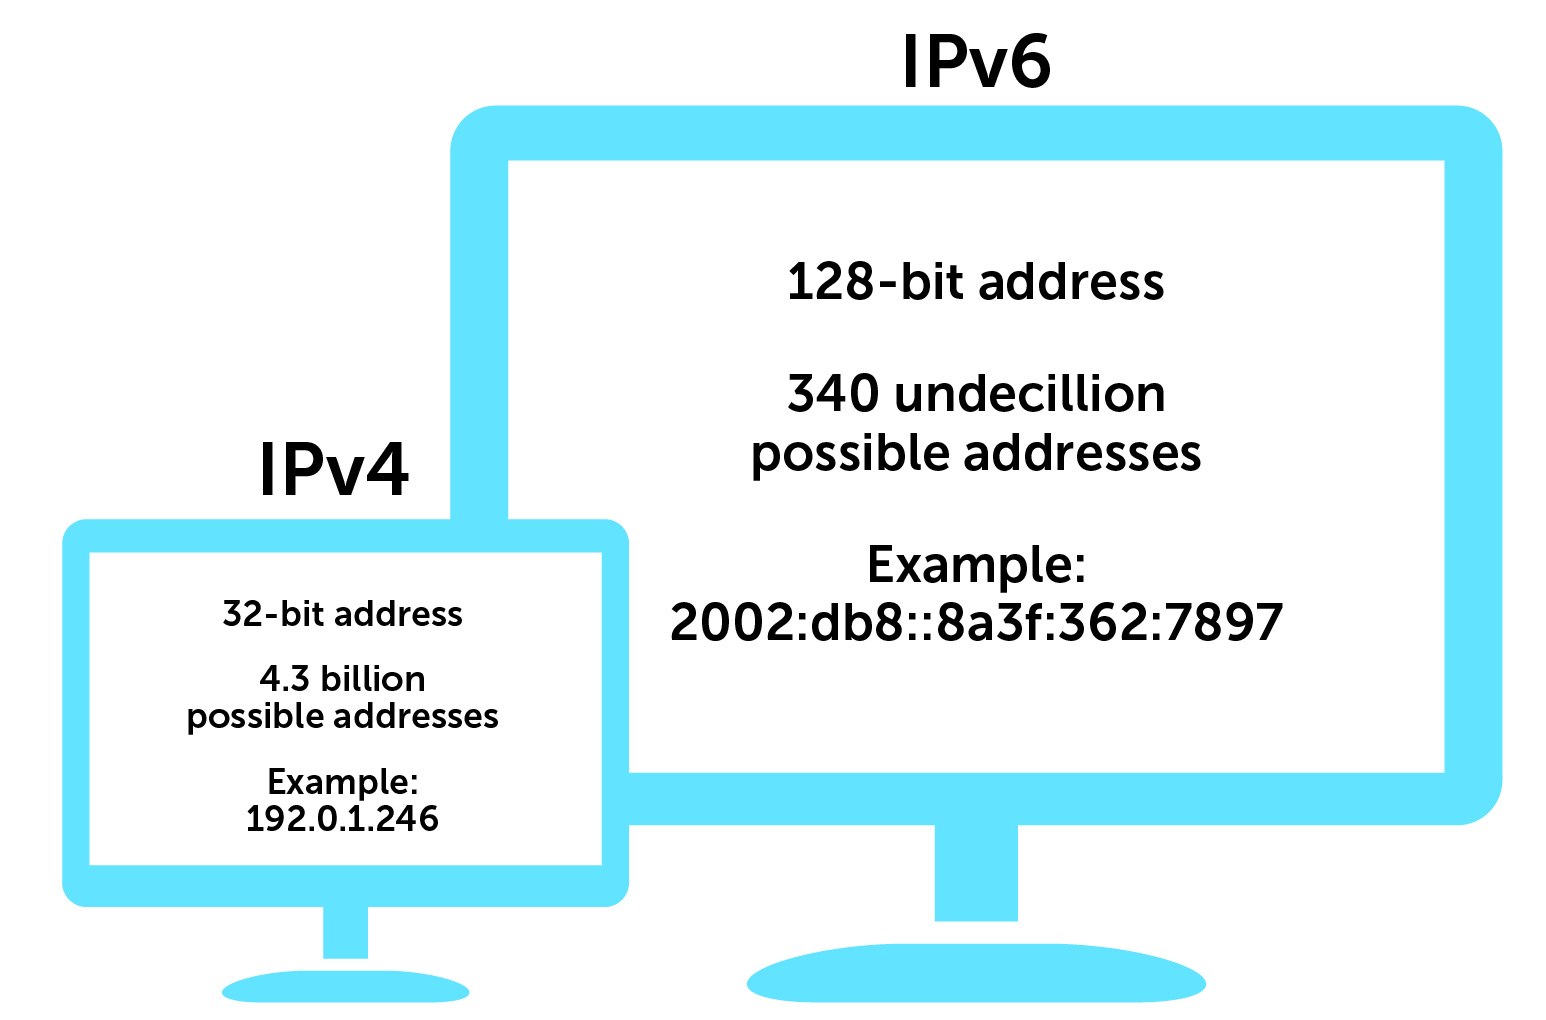 Attributes of IPv4 vs IPv6